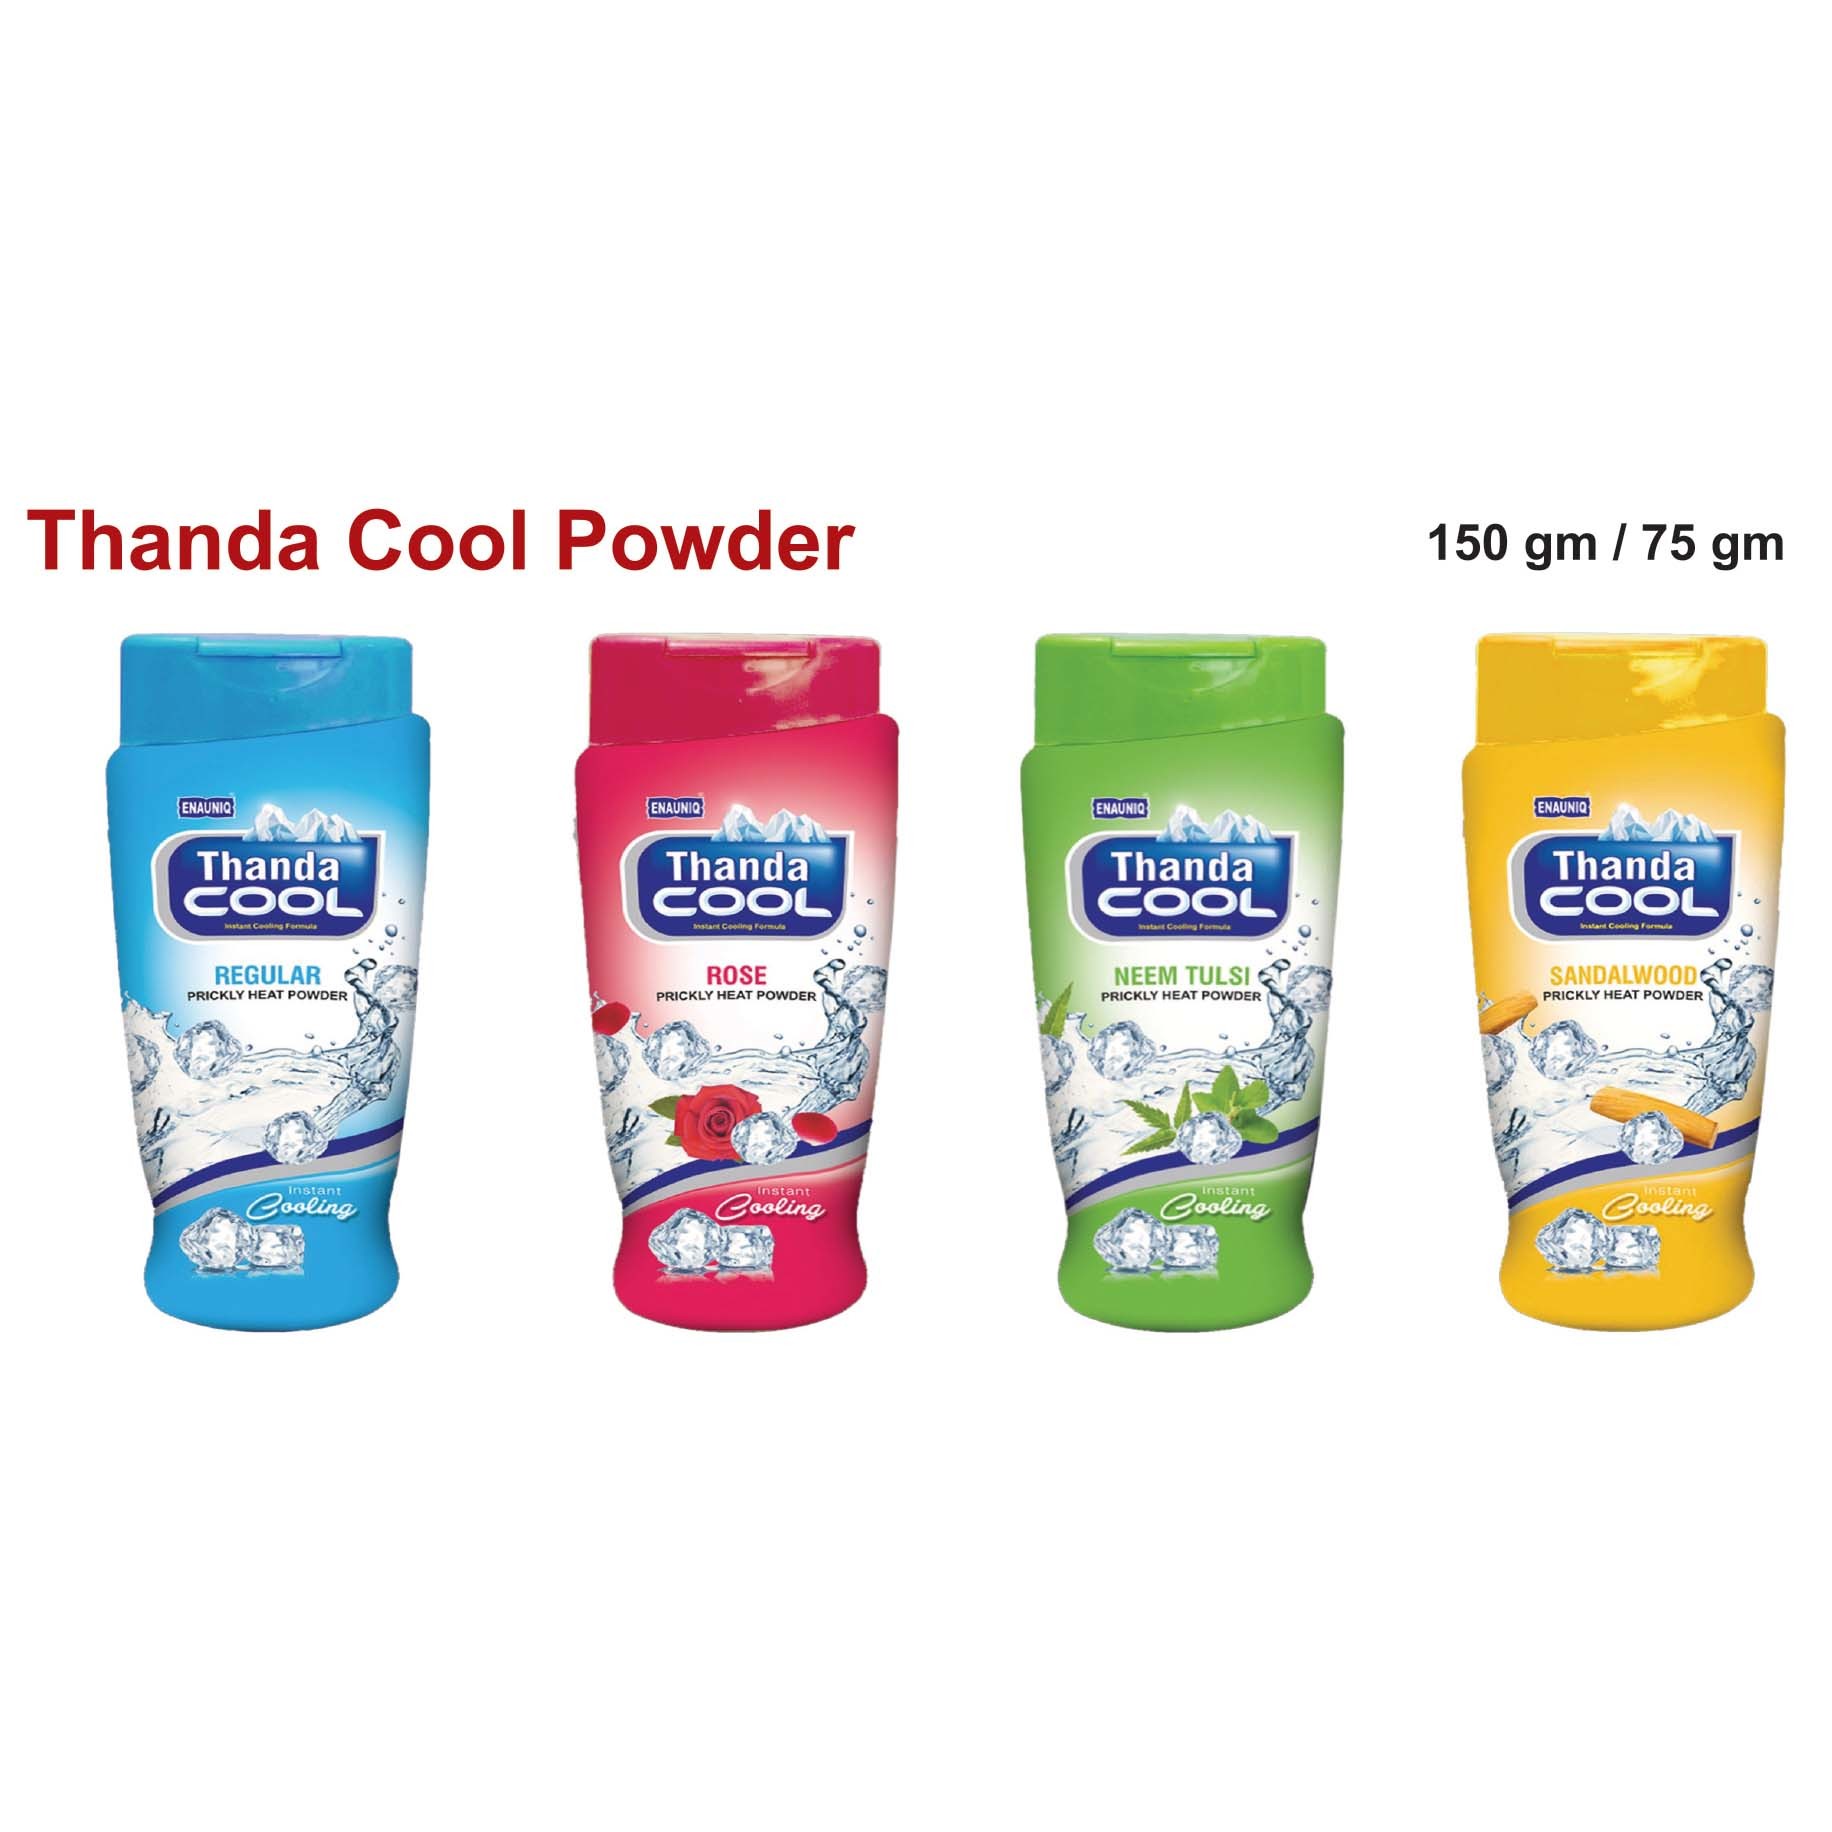 Enauniq Thanda Cool Powder